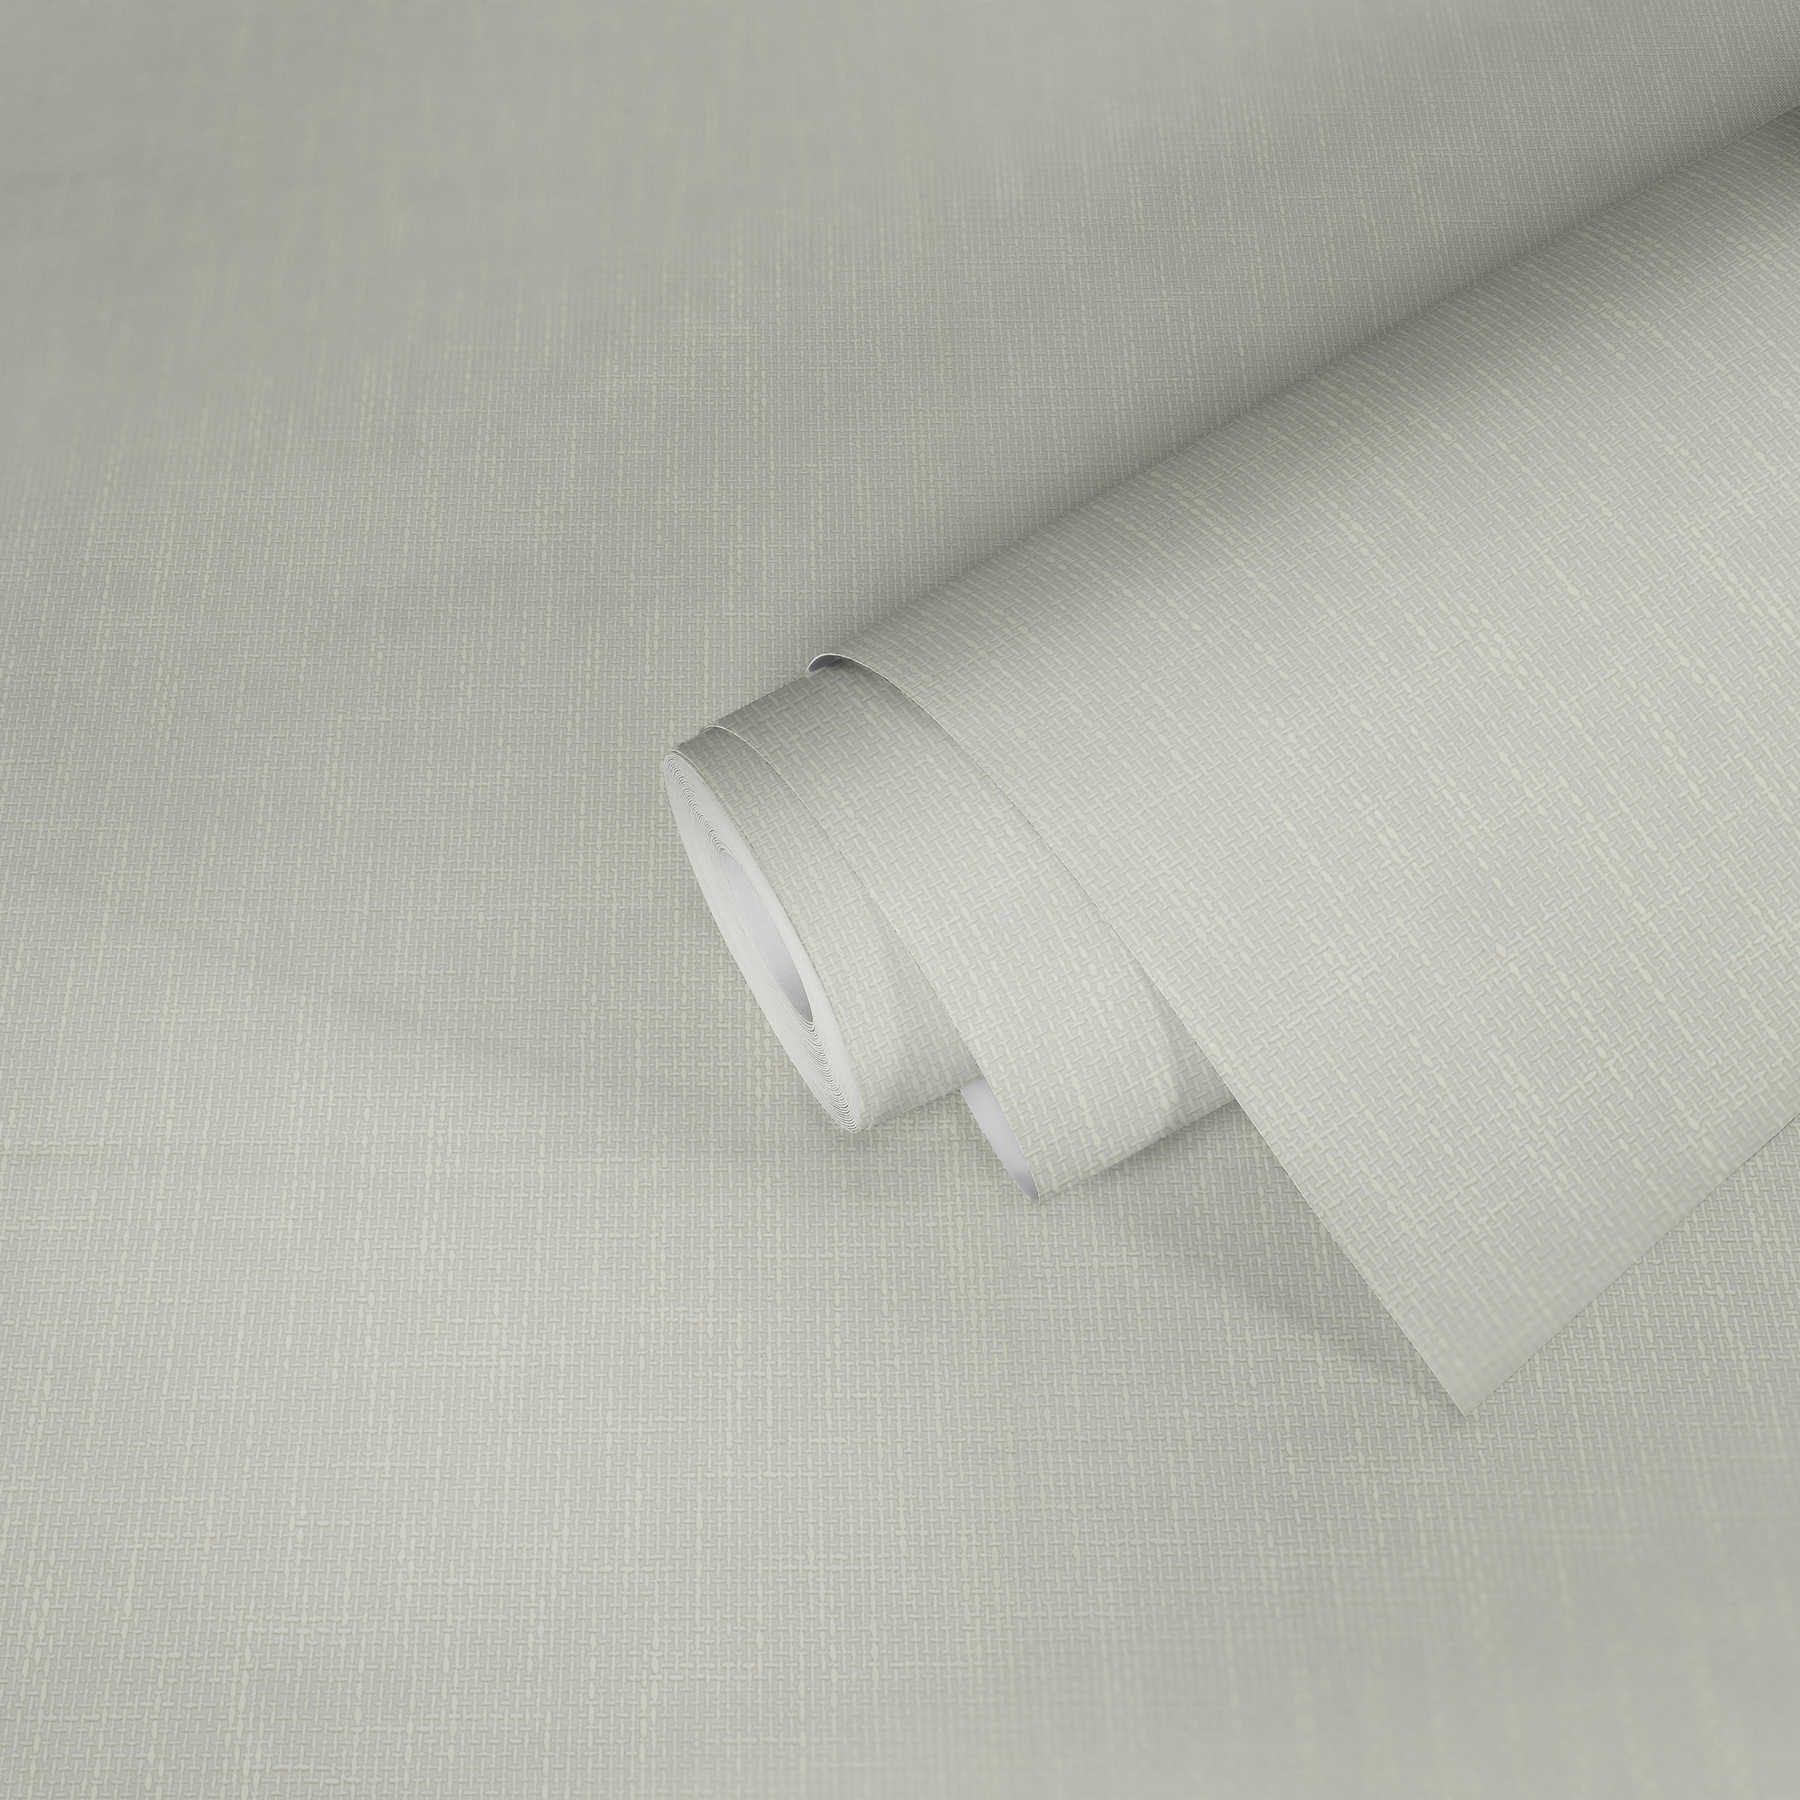             Carta da parati profilata con struttura in tessuto effetto lino - bianco
        